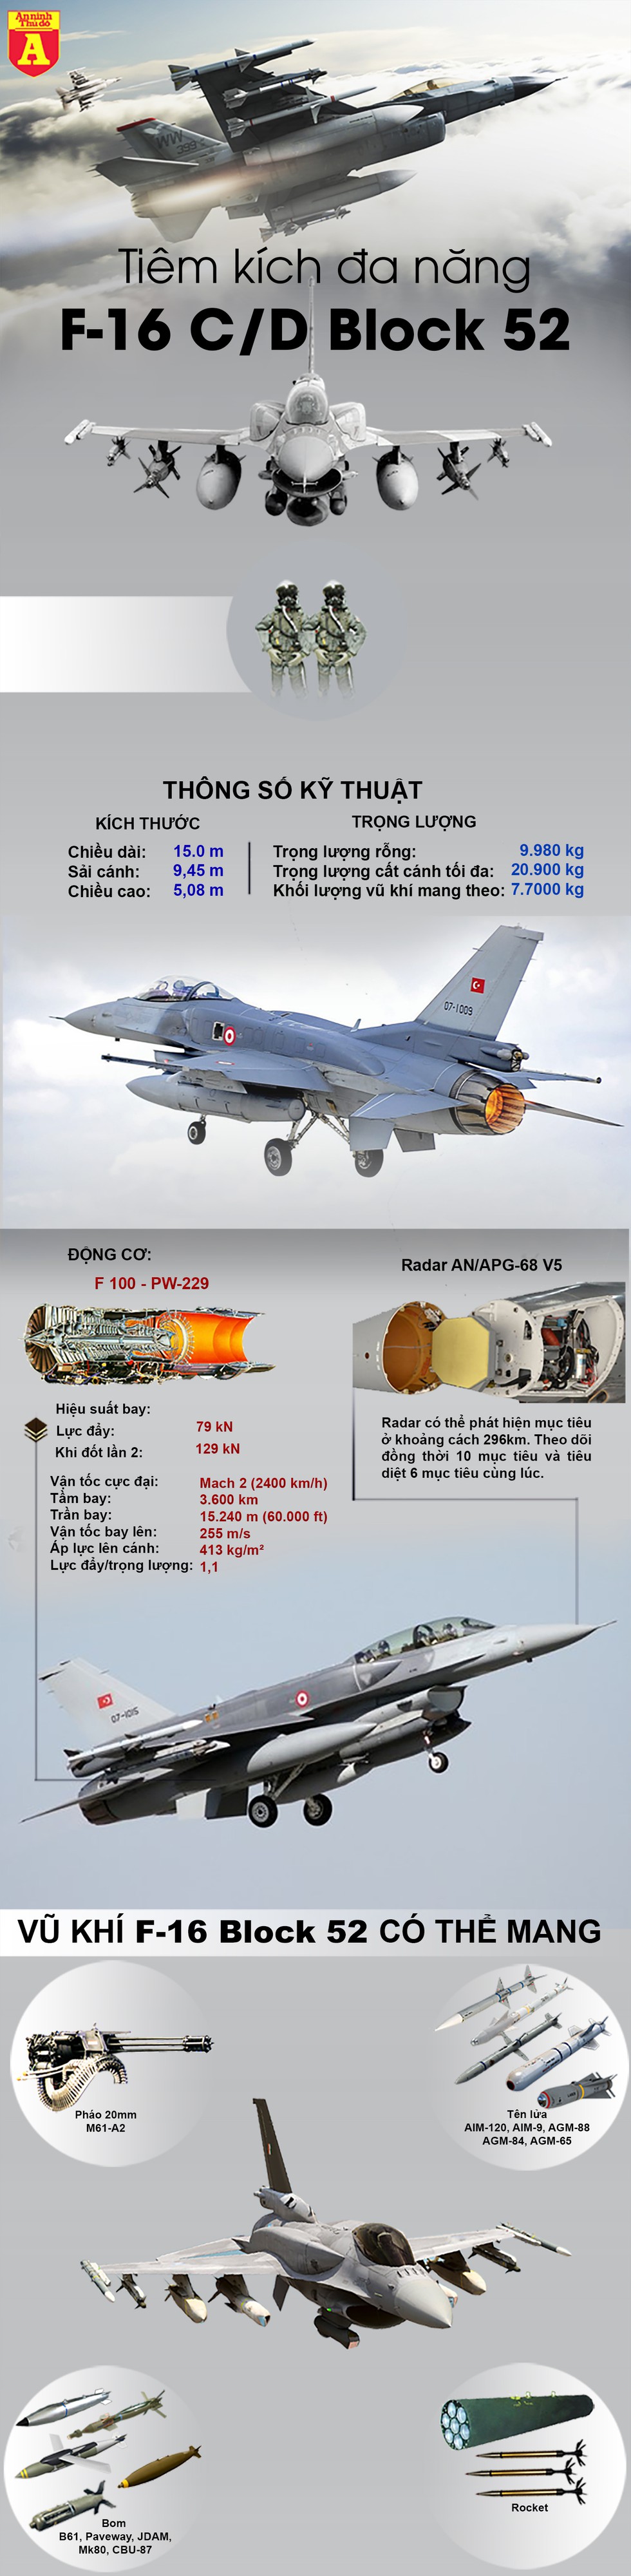  [Info] Thổ Nhĩ Kỳ đang có biến thể nào của "chiến thần" F-16? - Ảnh 1